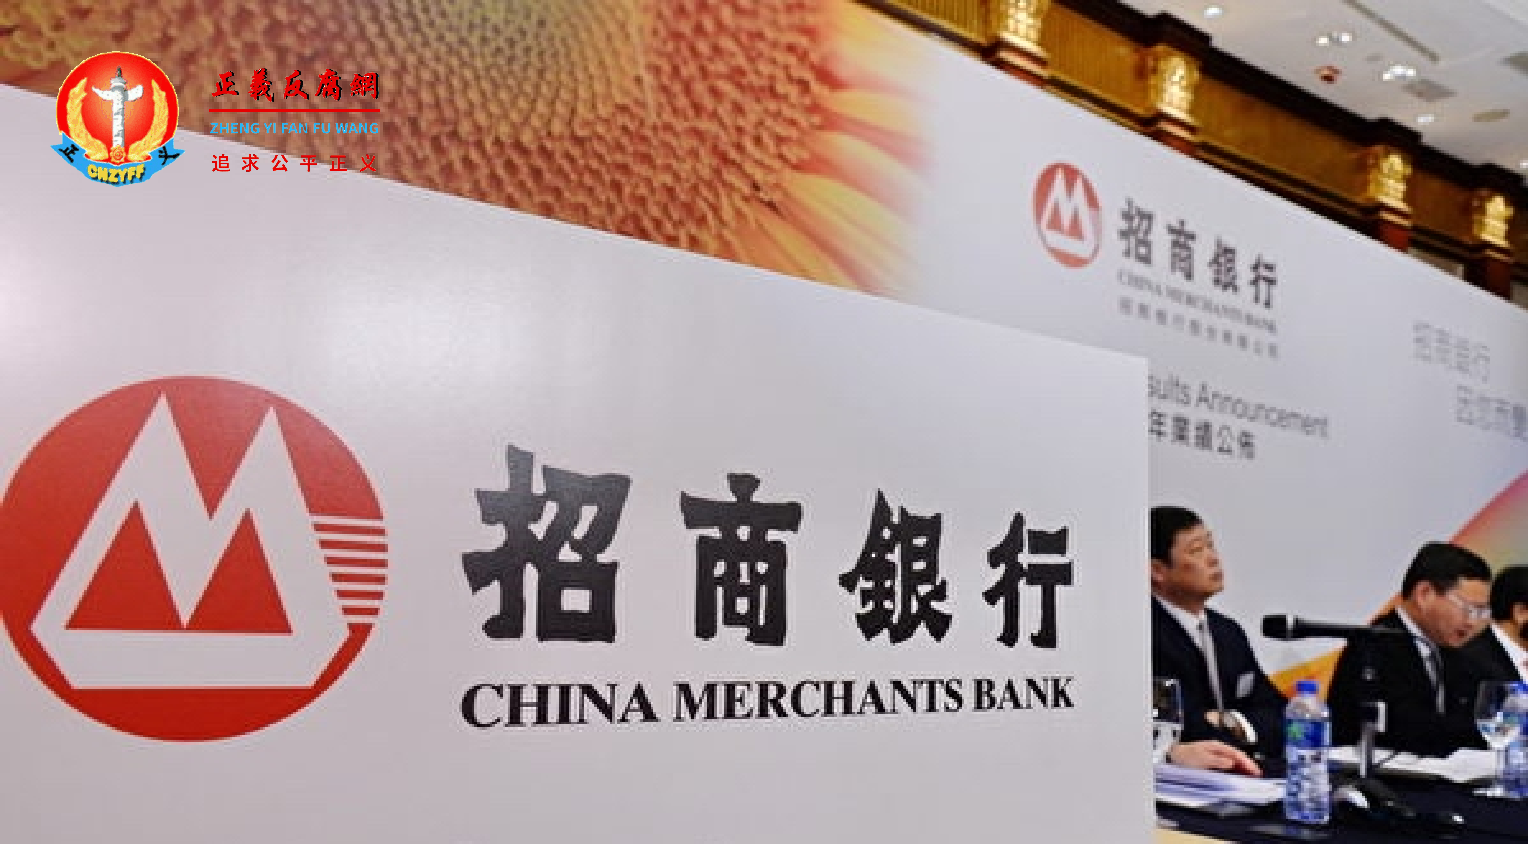 招商银行在广东省的几家分行日前已停止房屋按揭贷款。.png